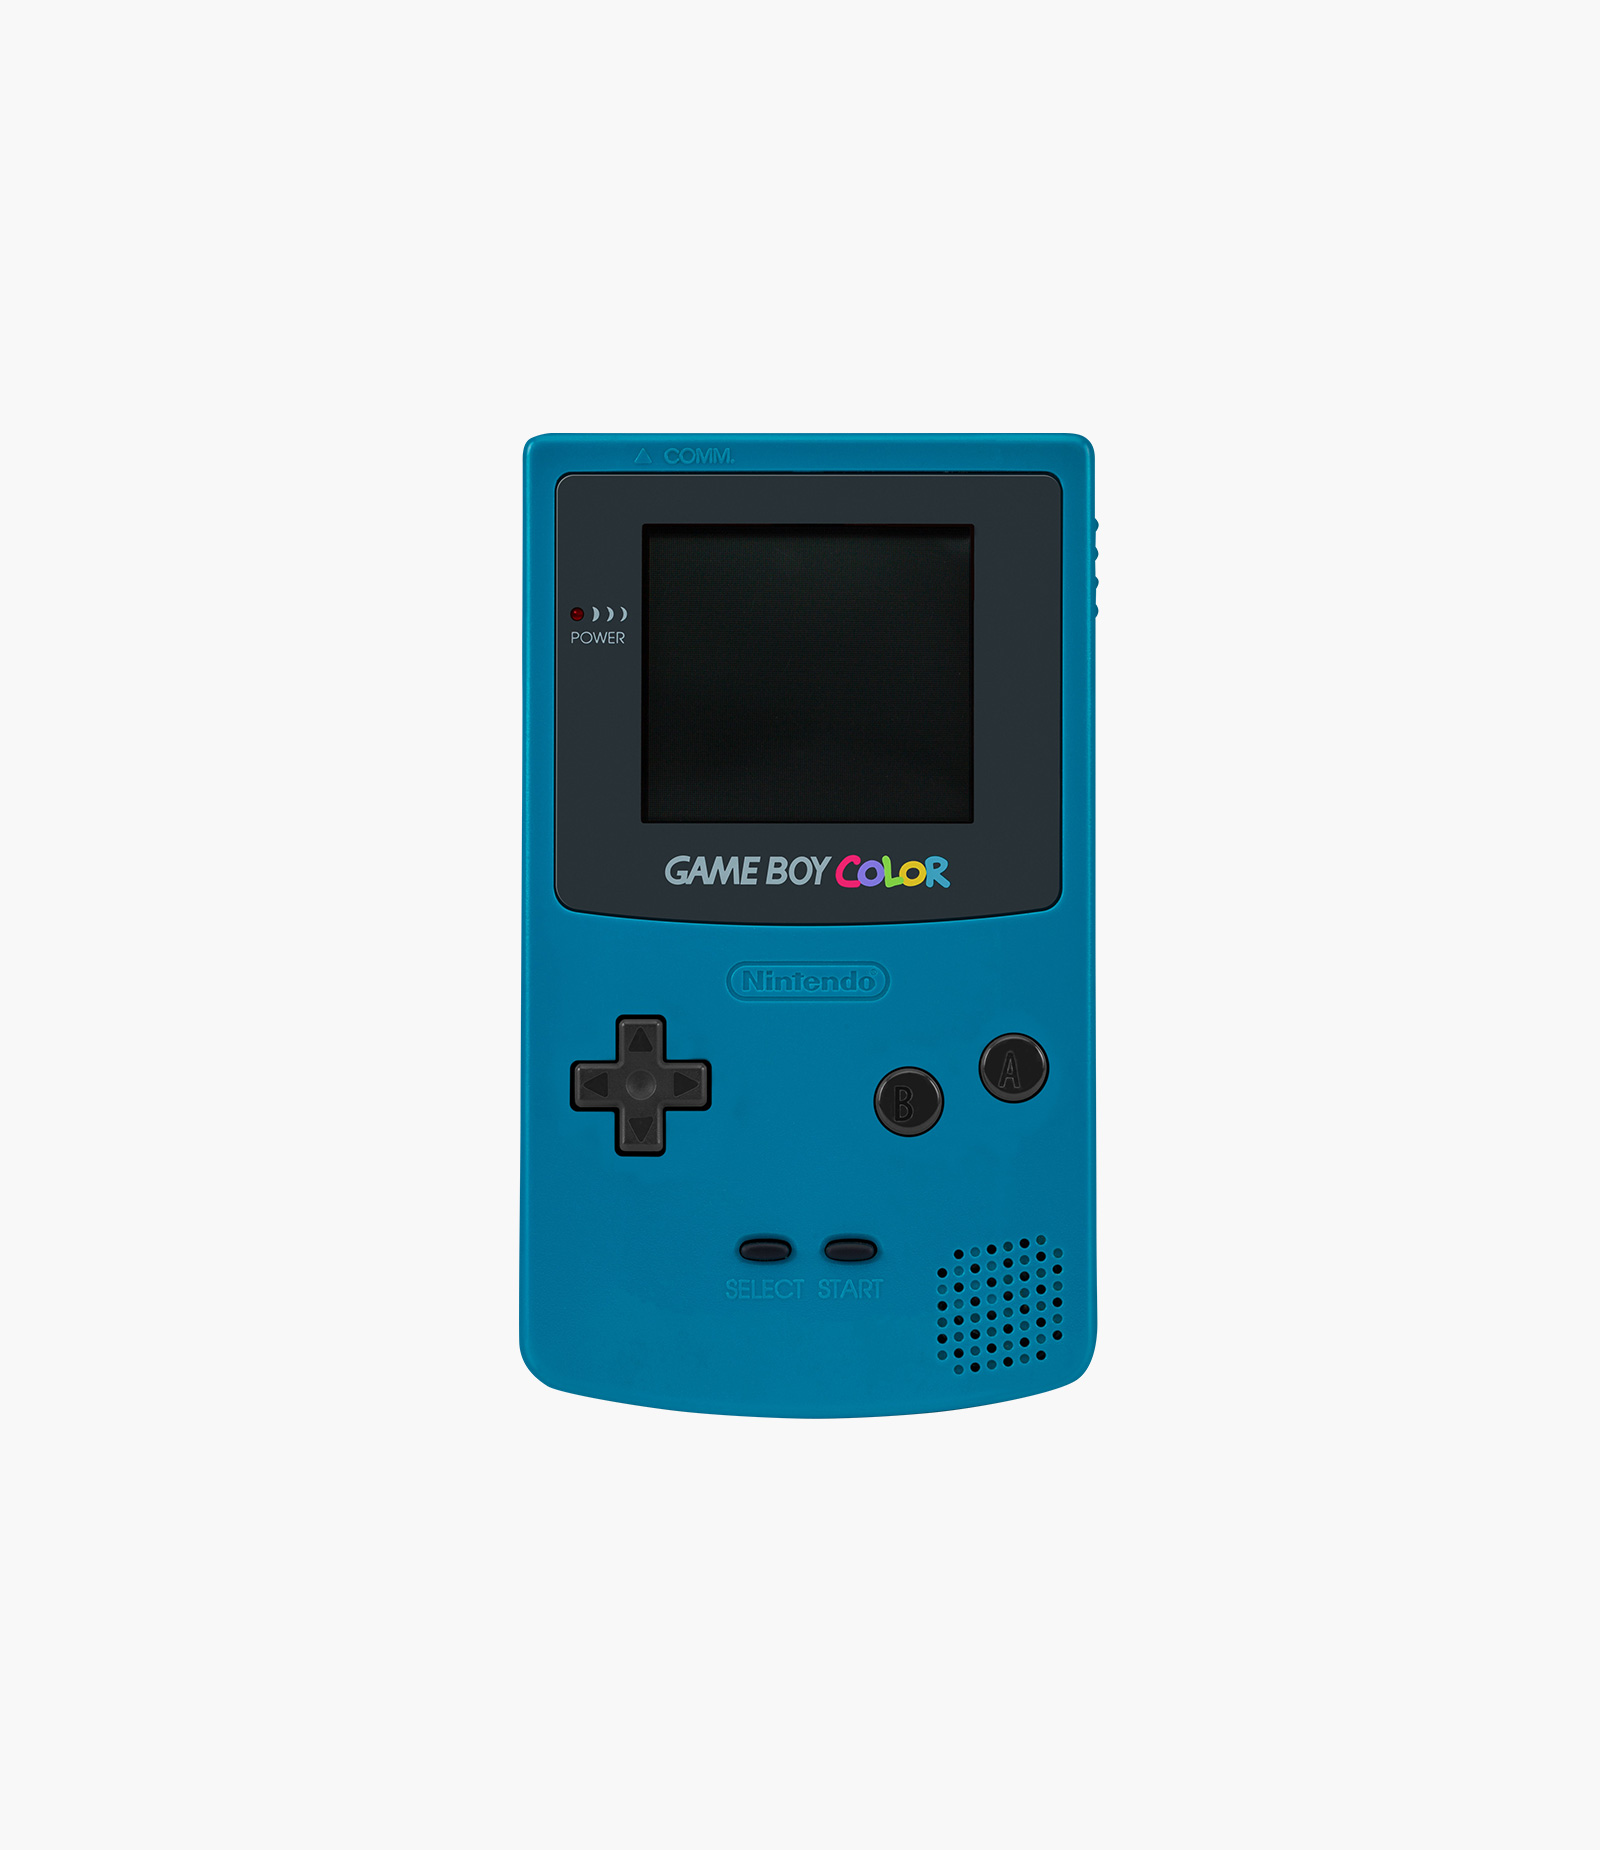 Nintendo Gameboy Color Teal